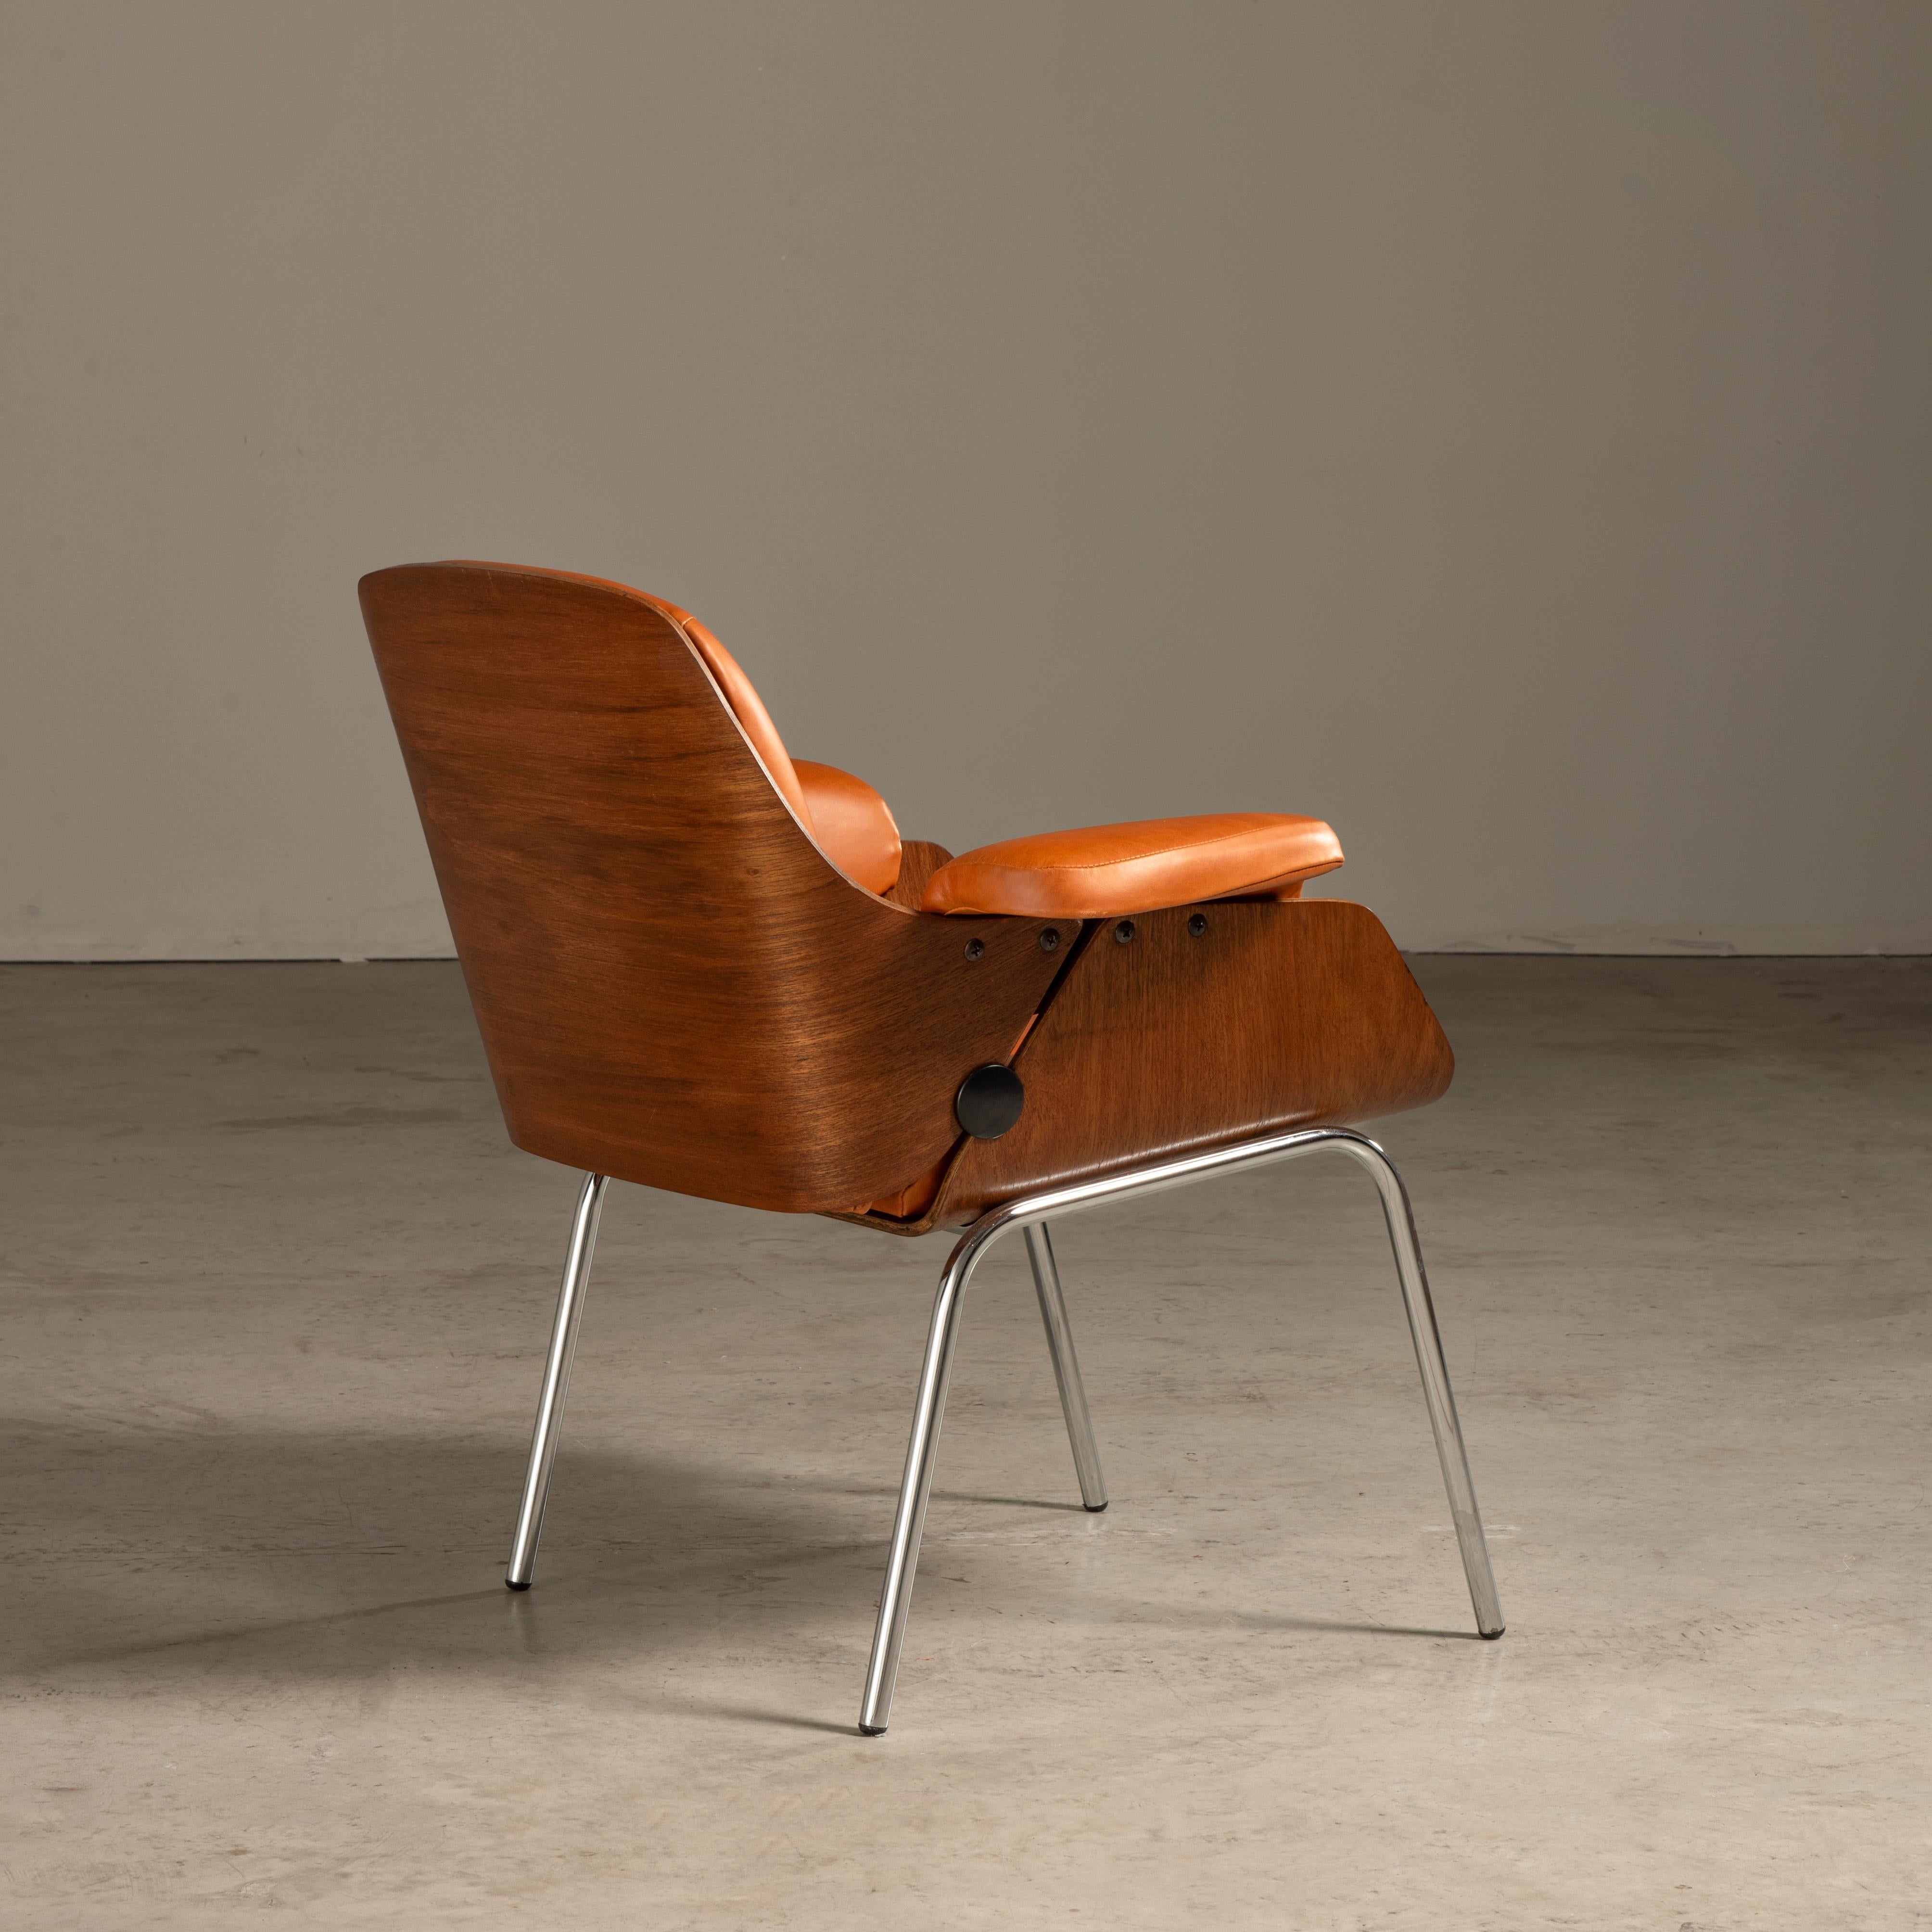 Dieser von Carlo Fongaro entworfene Sessel ist ein Beispiel für brasilianisches Möbeldesign aus der Mitte des 20. Jahrhunderts. Der Stuhl kombiniert die Verwendung von Holz und Leder, Materialien, die bei brasilianischen Möbeln aus dieser Zeit